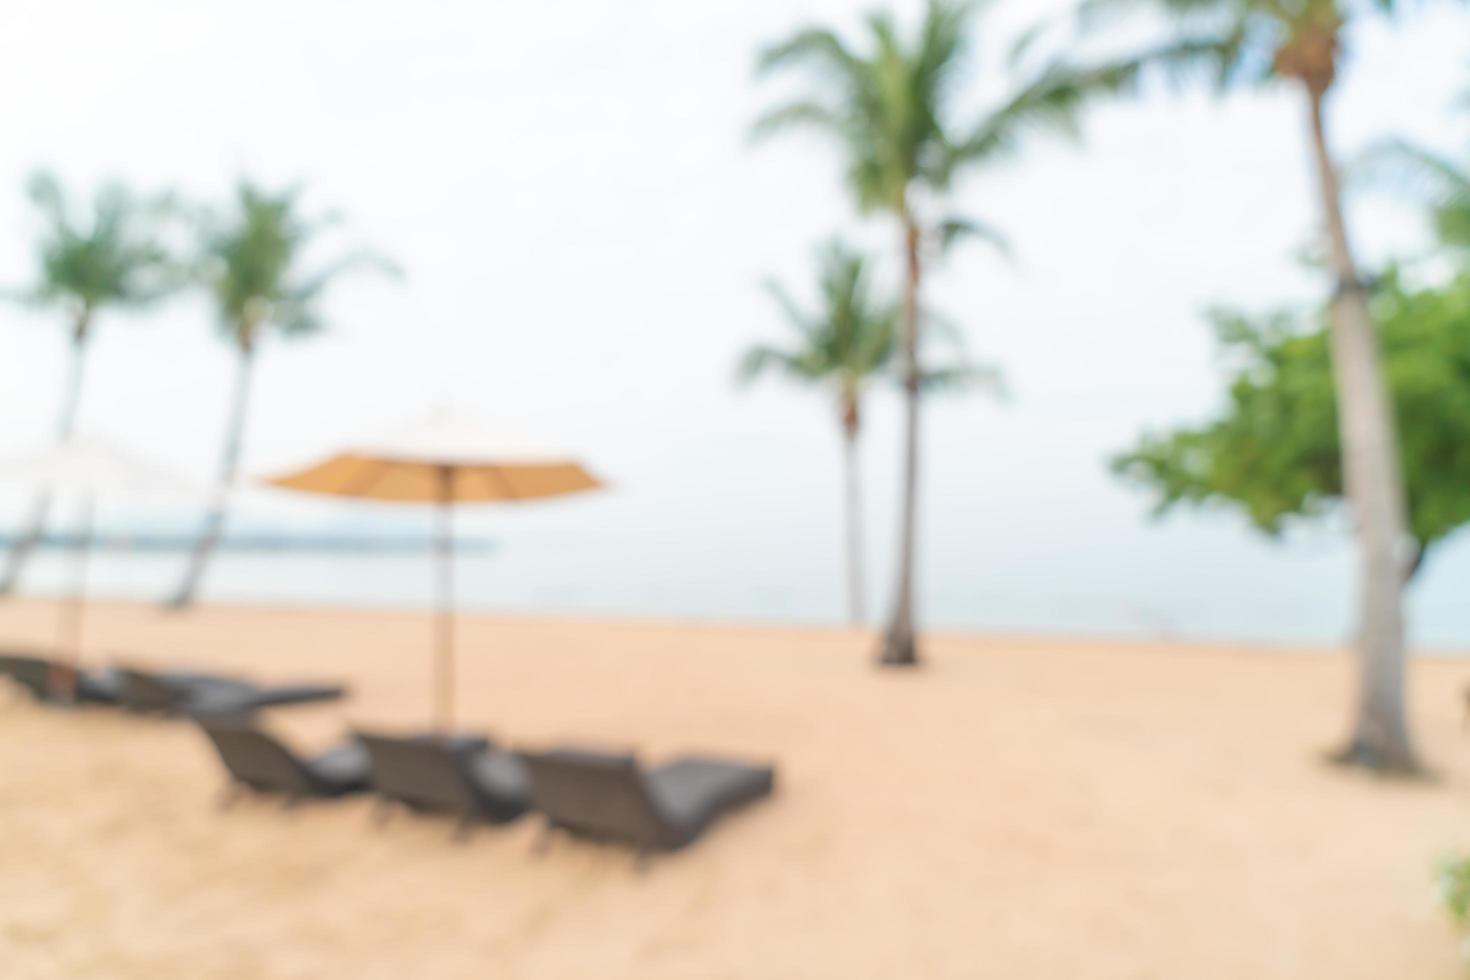 abstrakt suddig strandstol på stranden med havshavet för bakgrund - resor och semesterbegrepp foto